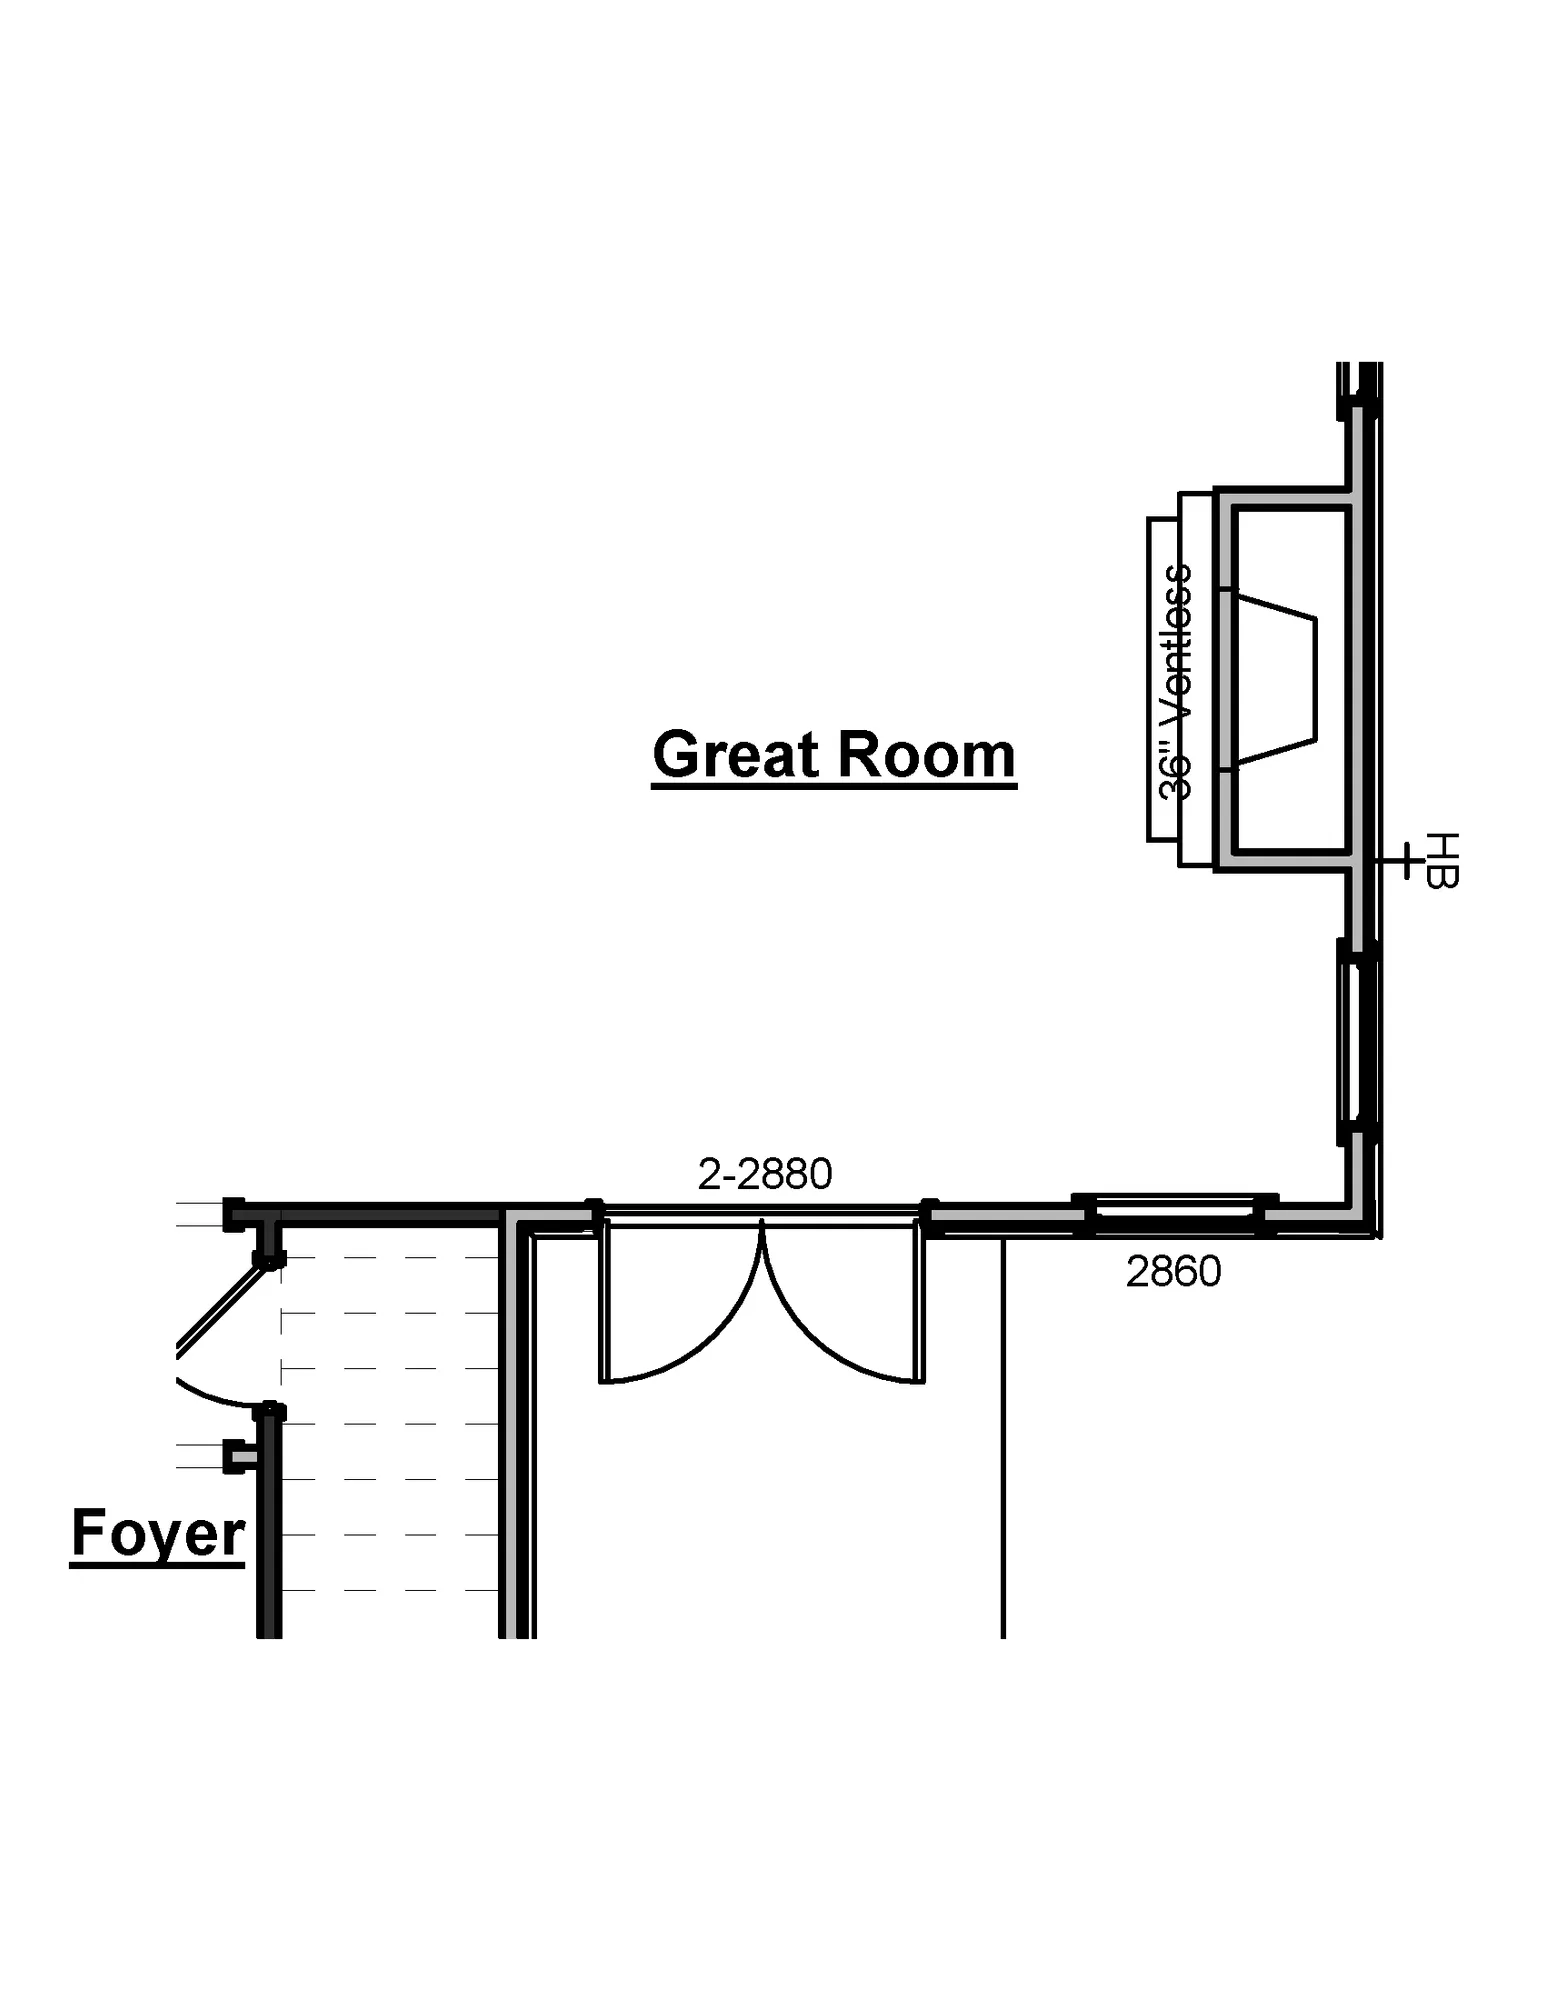 Great Room-Double Doors & Window Option - undefined